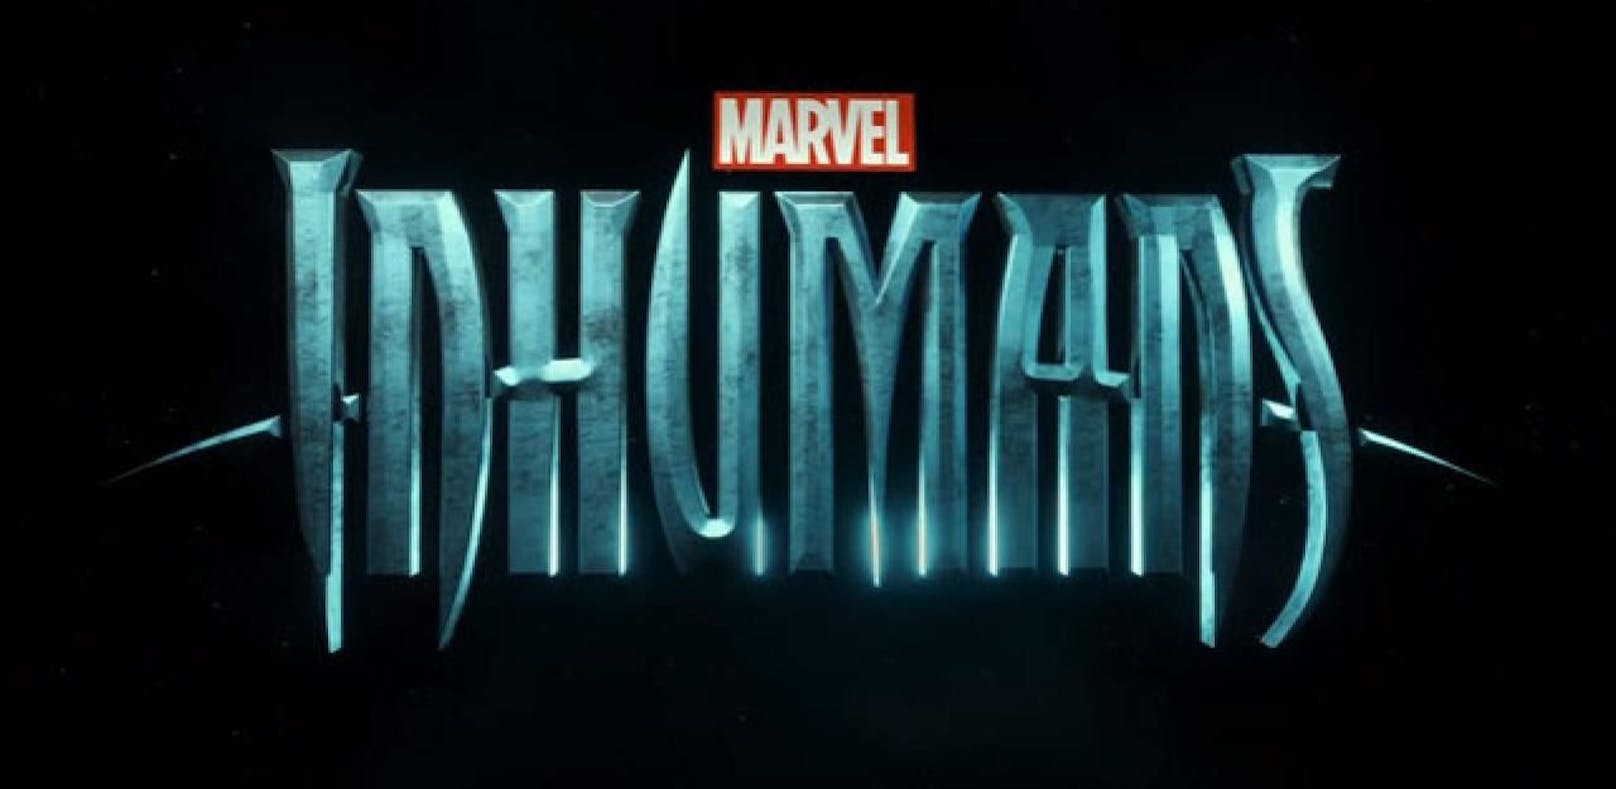 Erster Teaser Trailer für Marvel-Serie "Inhumans"